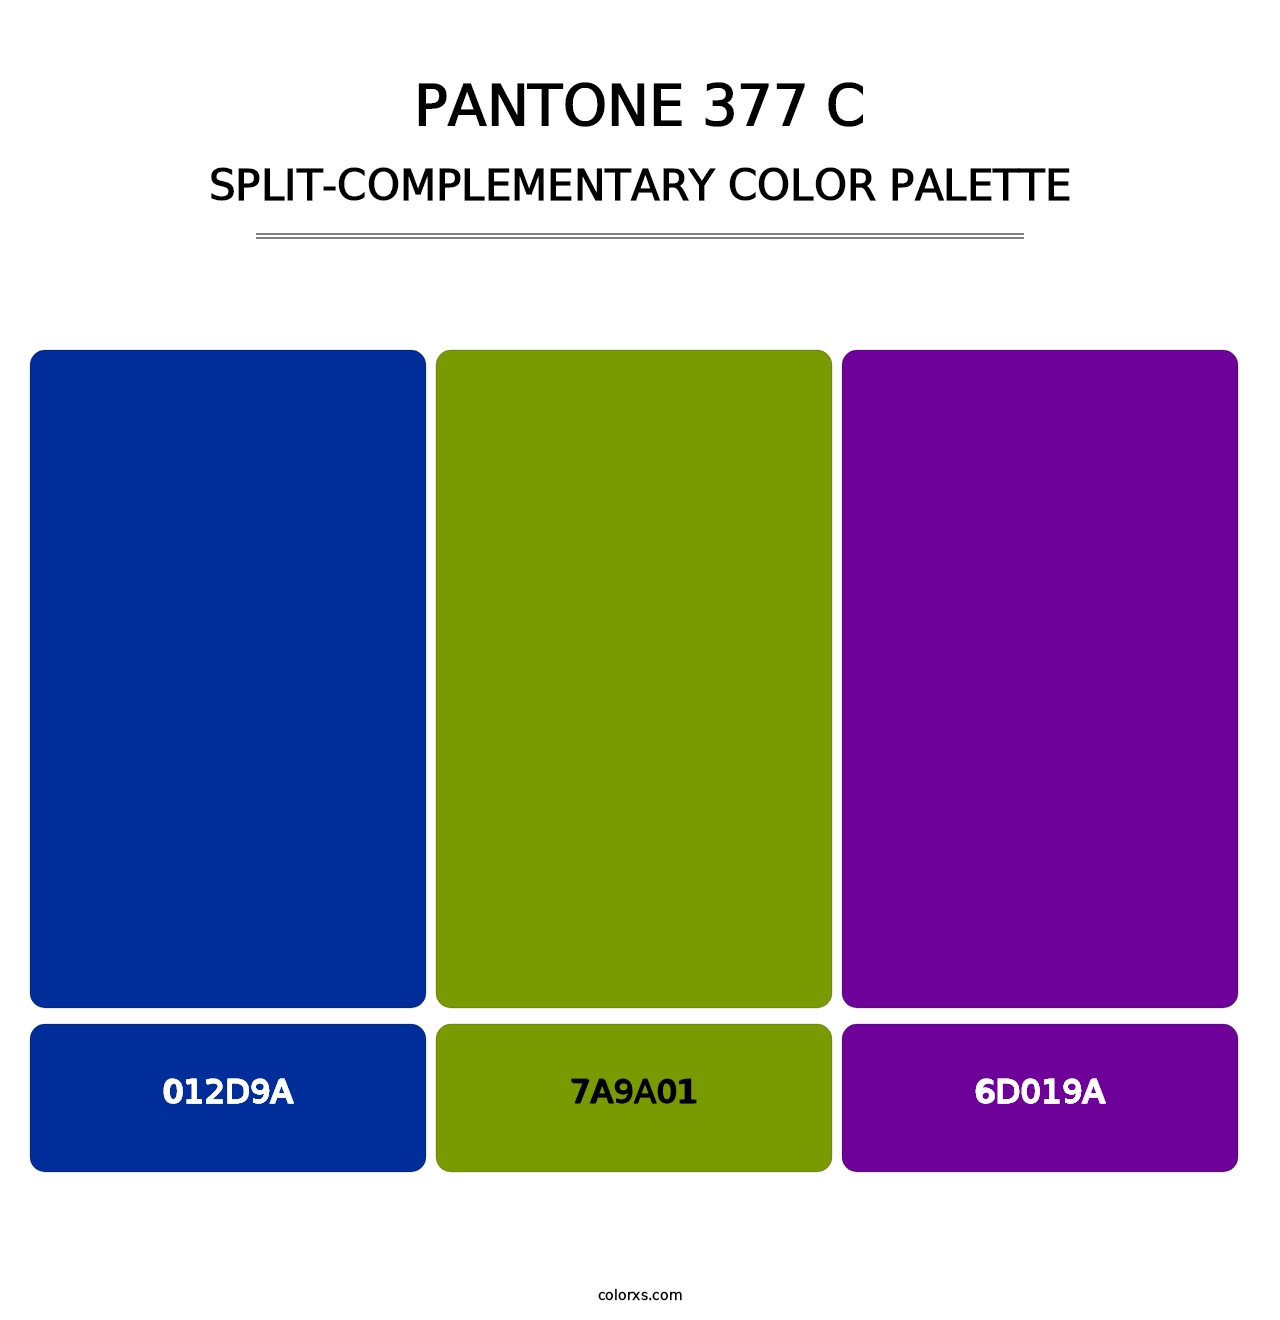 PANTONE 377 C - Split-Complementary Color Palette